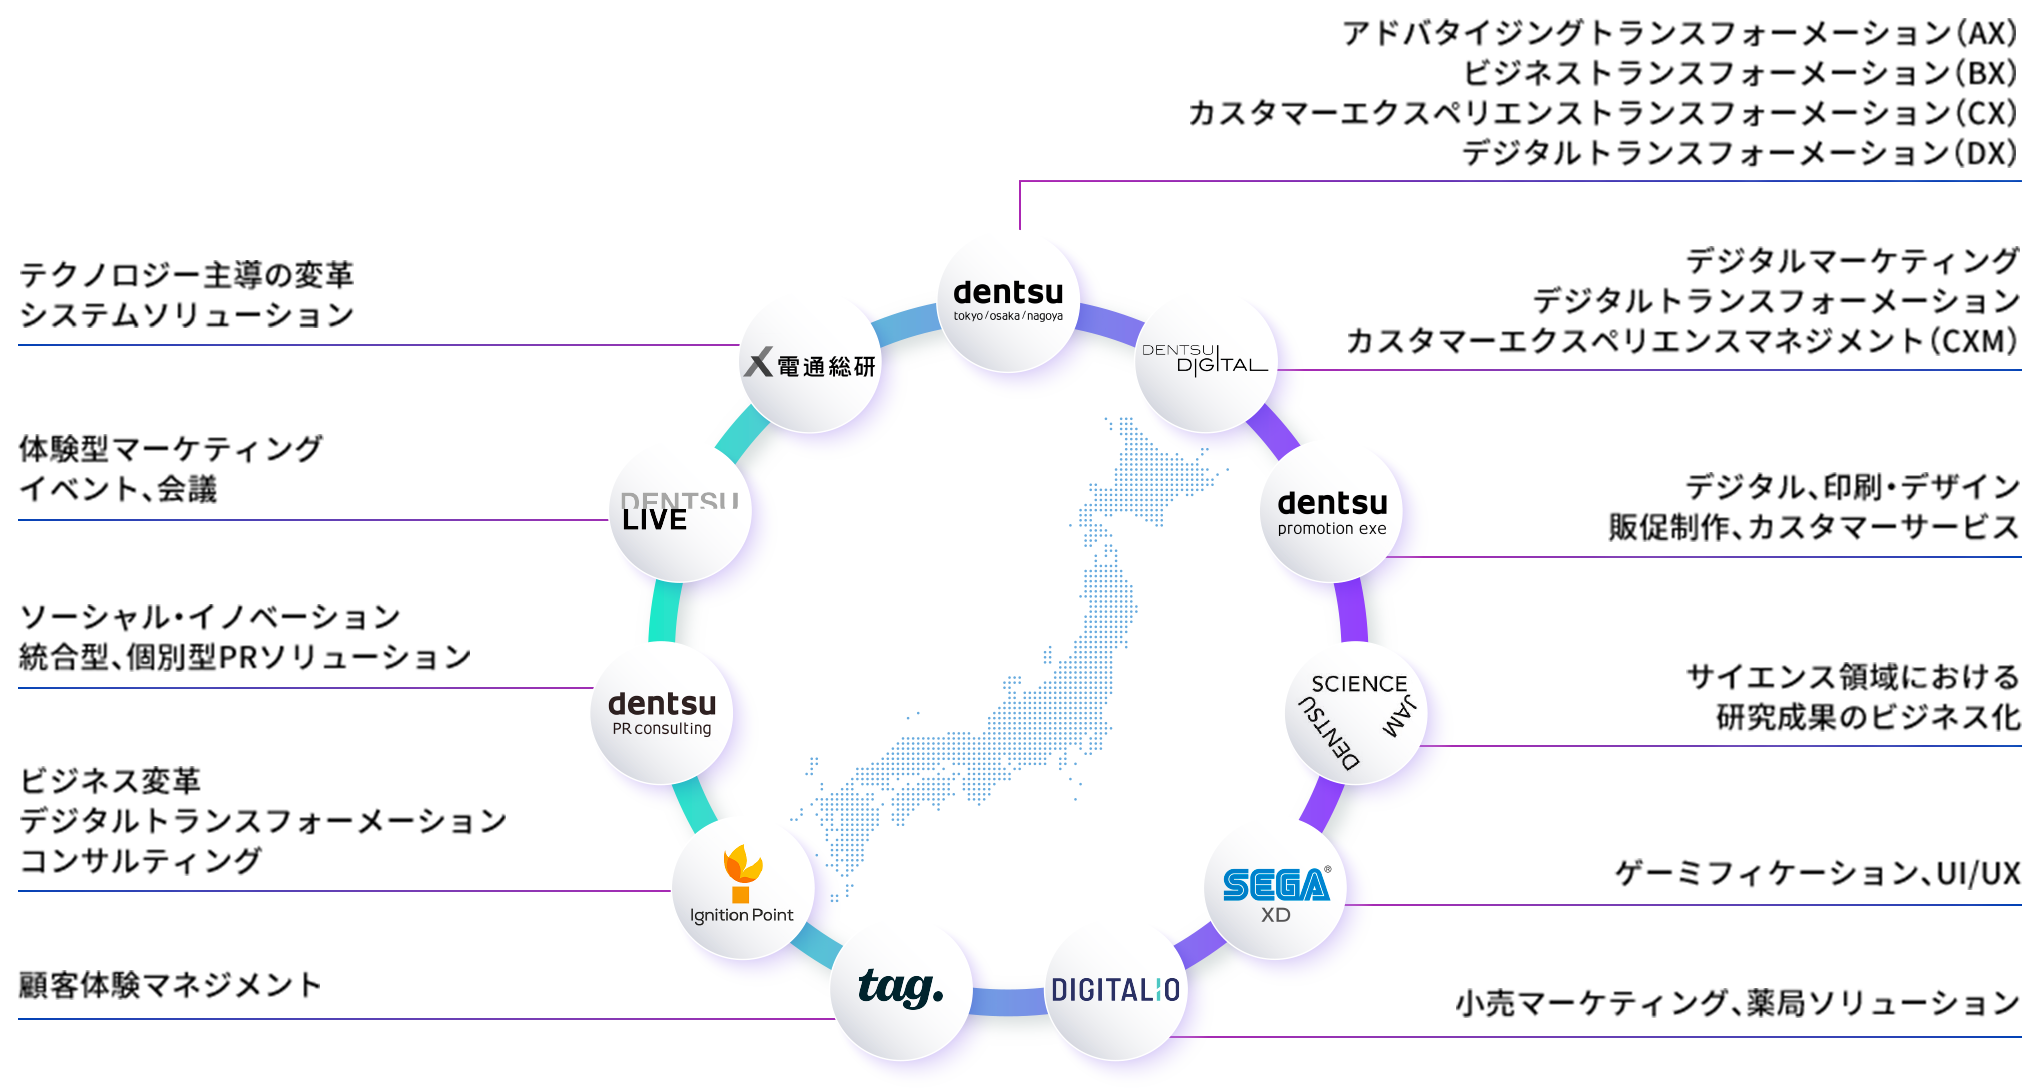 日本列島の画像があり、取り囲むように電通グループのロゴ（dentsu、DENTSU DIGITAL、dentsu promotion エクゼ、DENTSU SCIENCE JAM、SEGA XD、DIGITALIO、tag.、Ignition Point、dentsu PR consulting、DENTSU LIVE、電通総研）の11項目が書かれている。